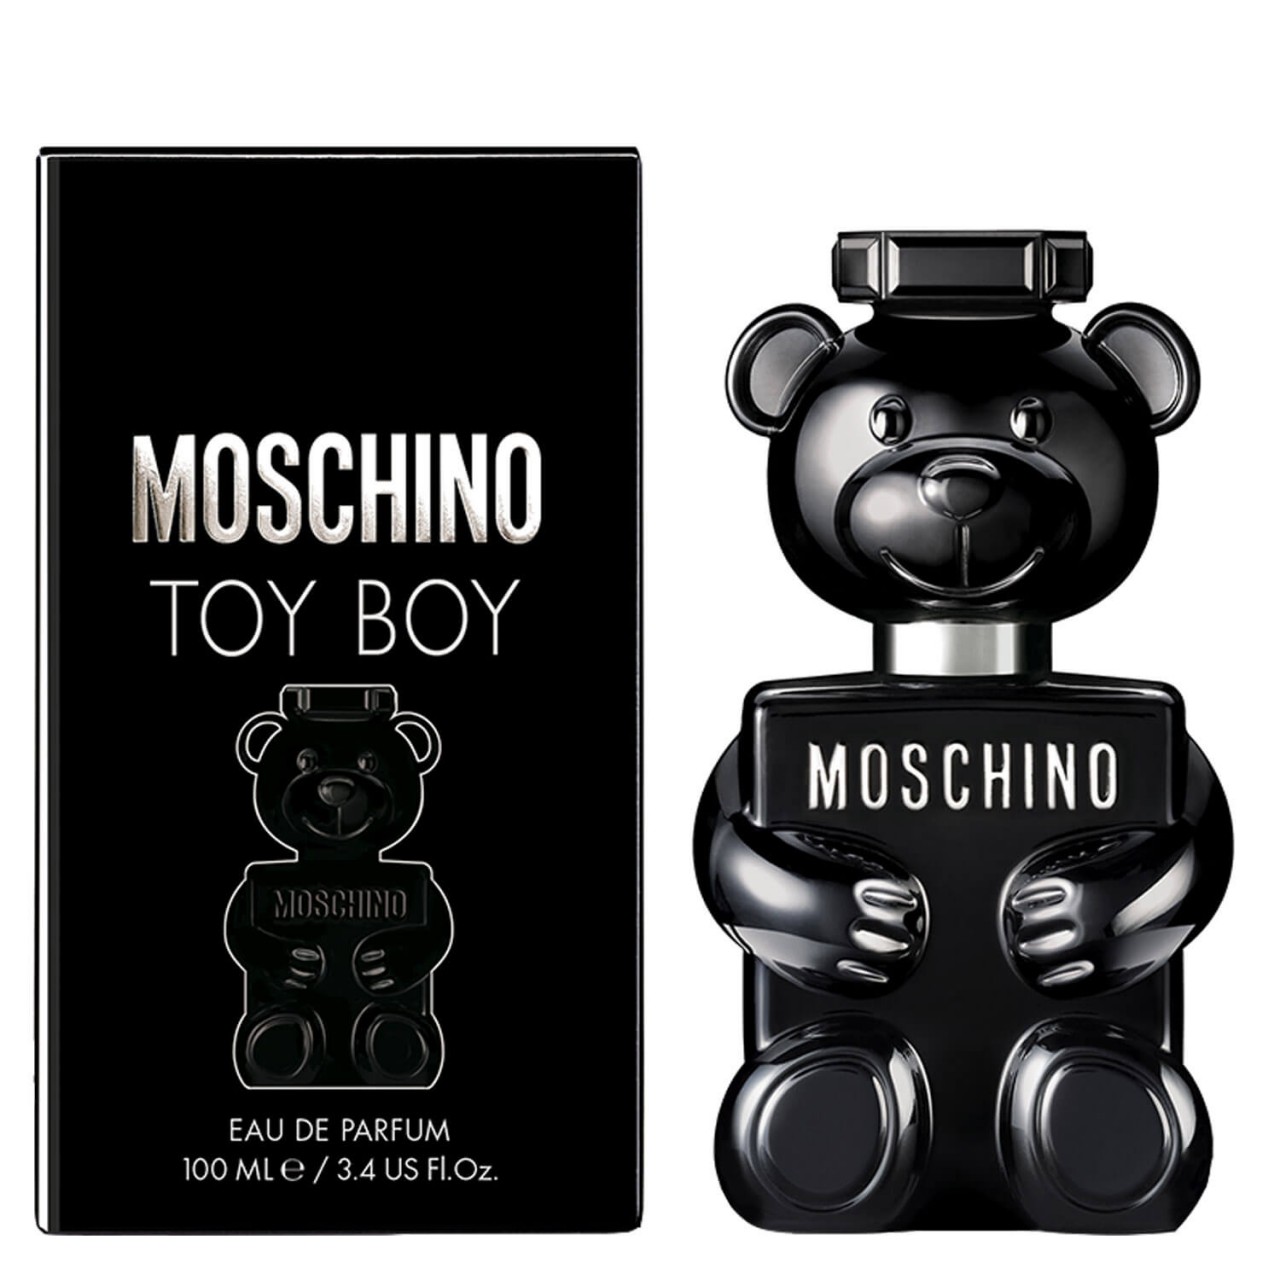 Toy Boy - Eau de Parfum Natural Spray von Moschino